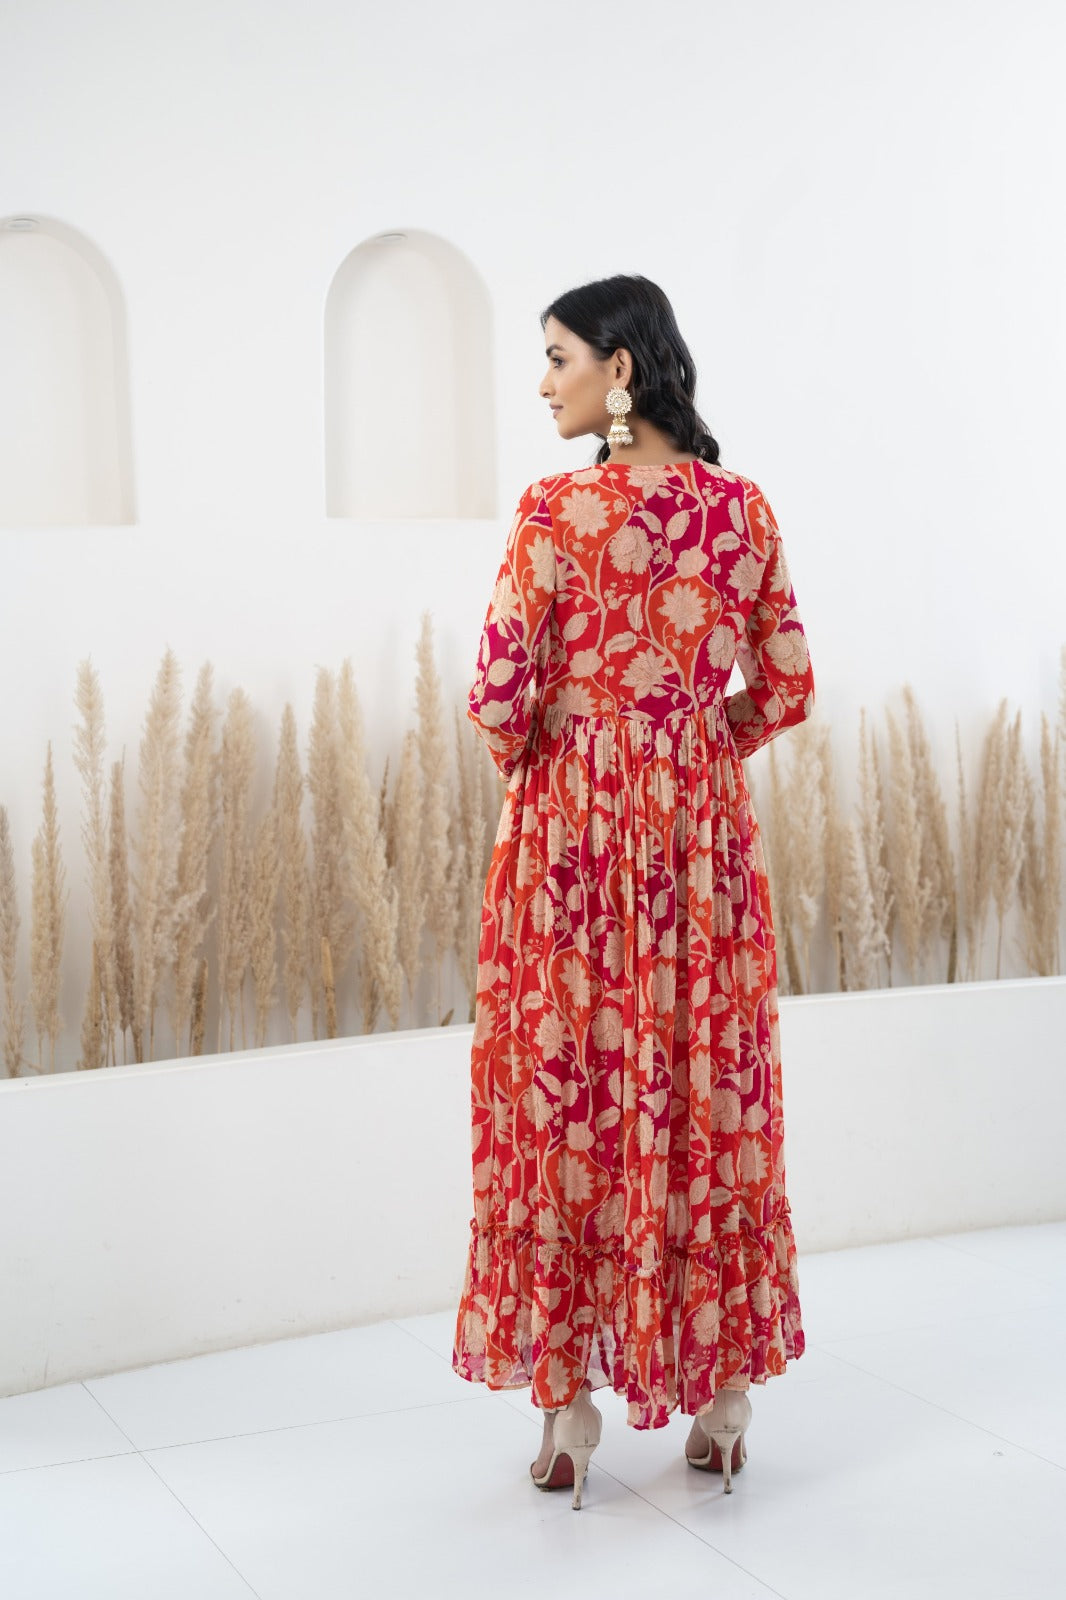 Women’s Floral Printed Long Dress by Myshka- 1 pc set